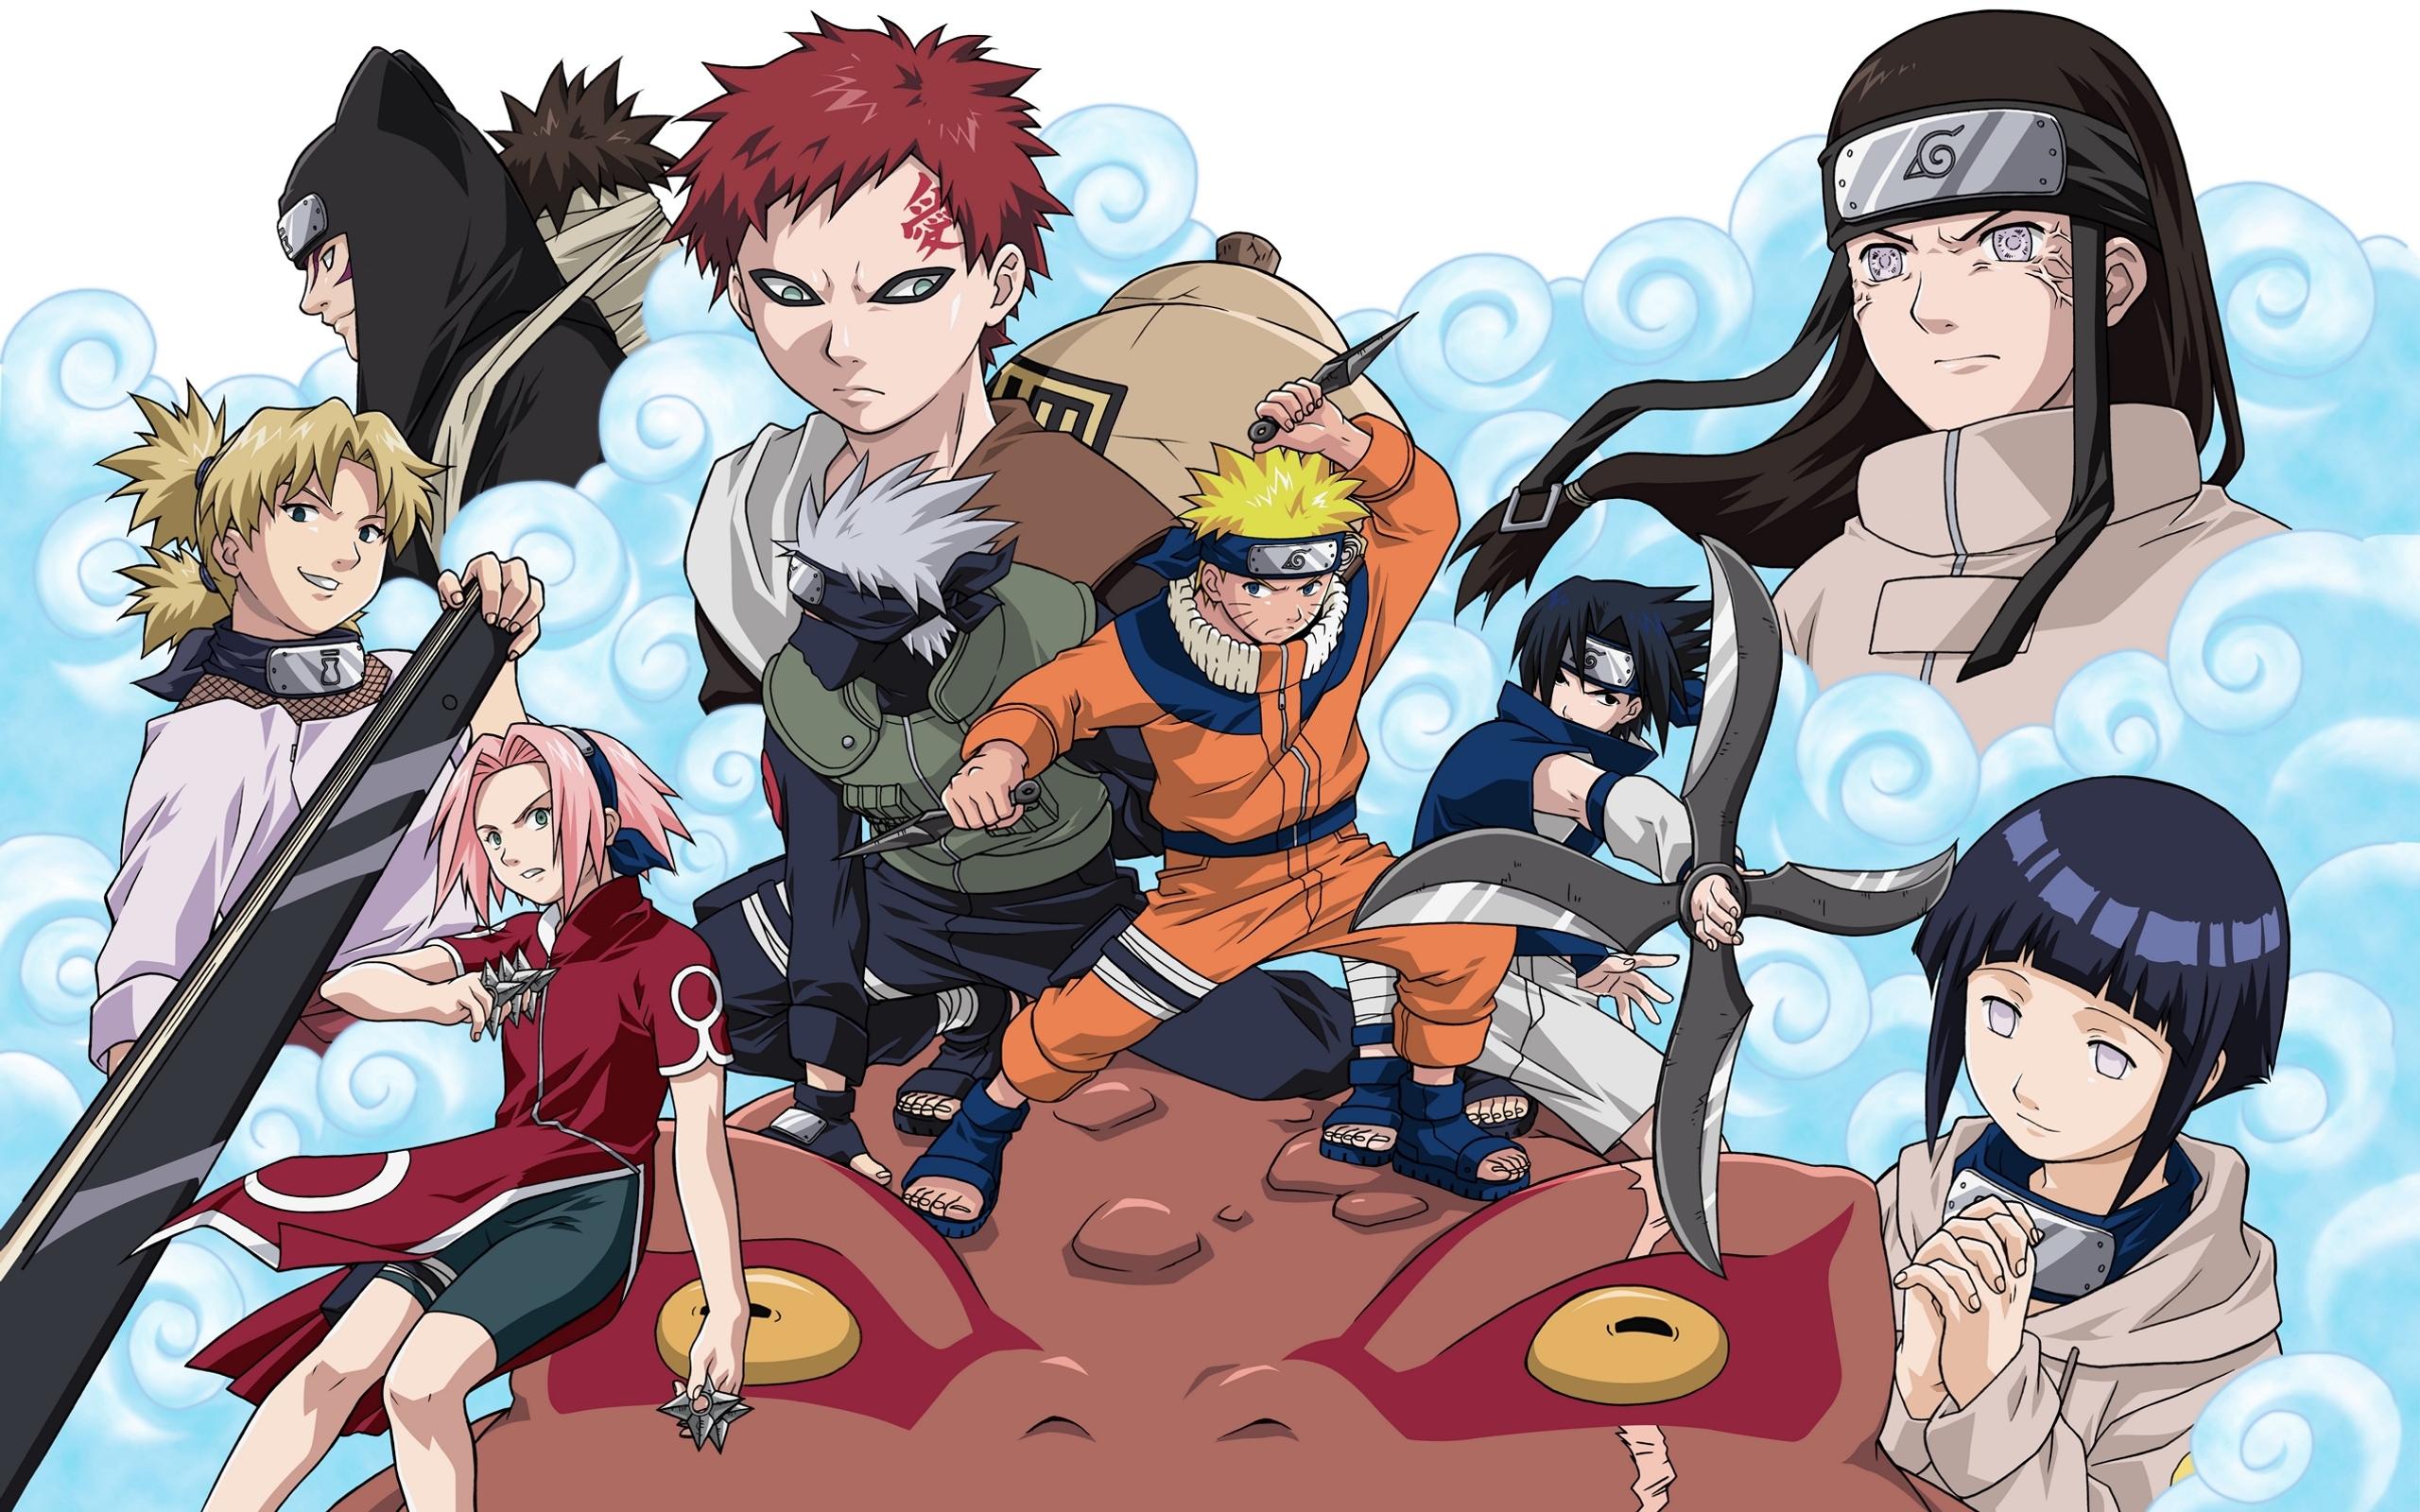 Thiết kế tuyệt đẹp về đội hình Naruto sẽ khiến bất kỳ ai yêu thích bộ phim anime này cảm thấy thích thú. Khám phá những bức ảnh quá chất về Naruto Team Wallpapers và đưa cả nhóm vào màn hình máy tính của bạn!